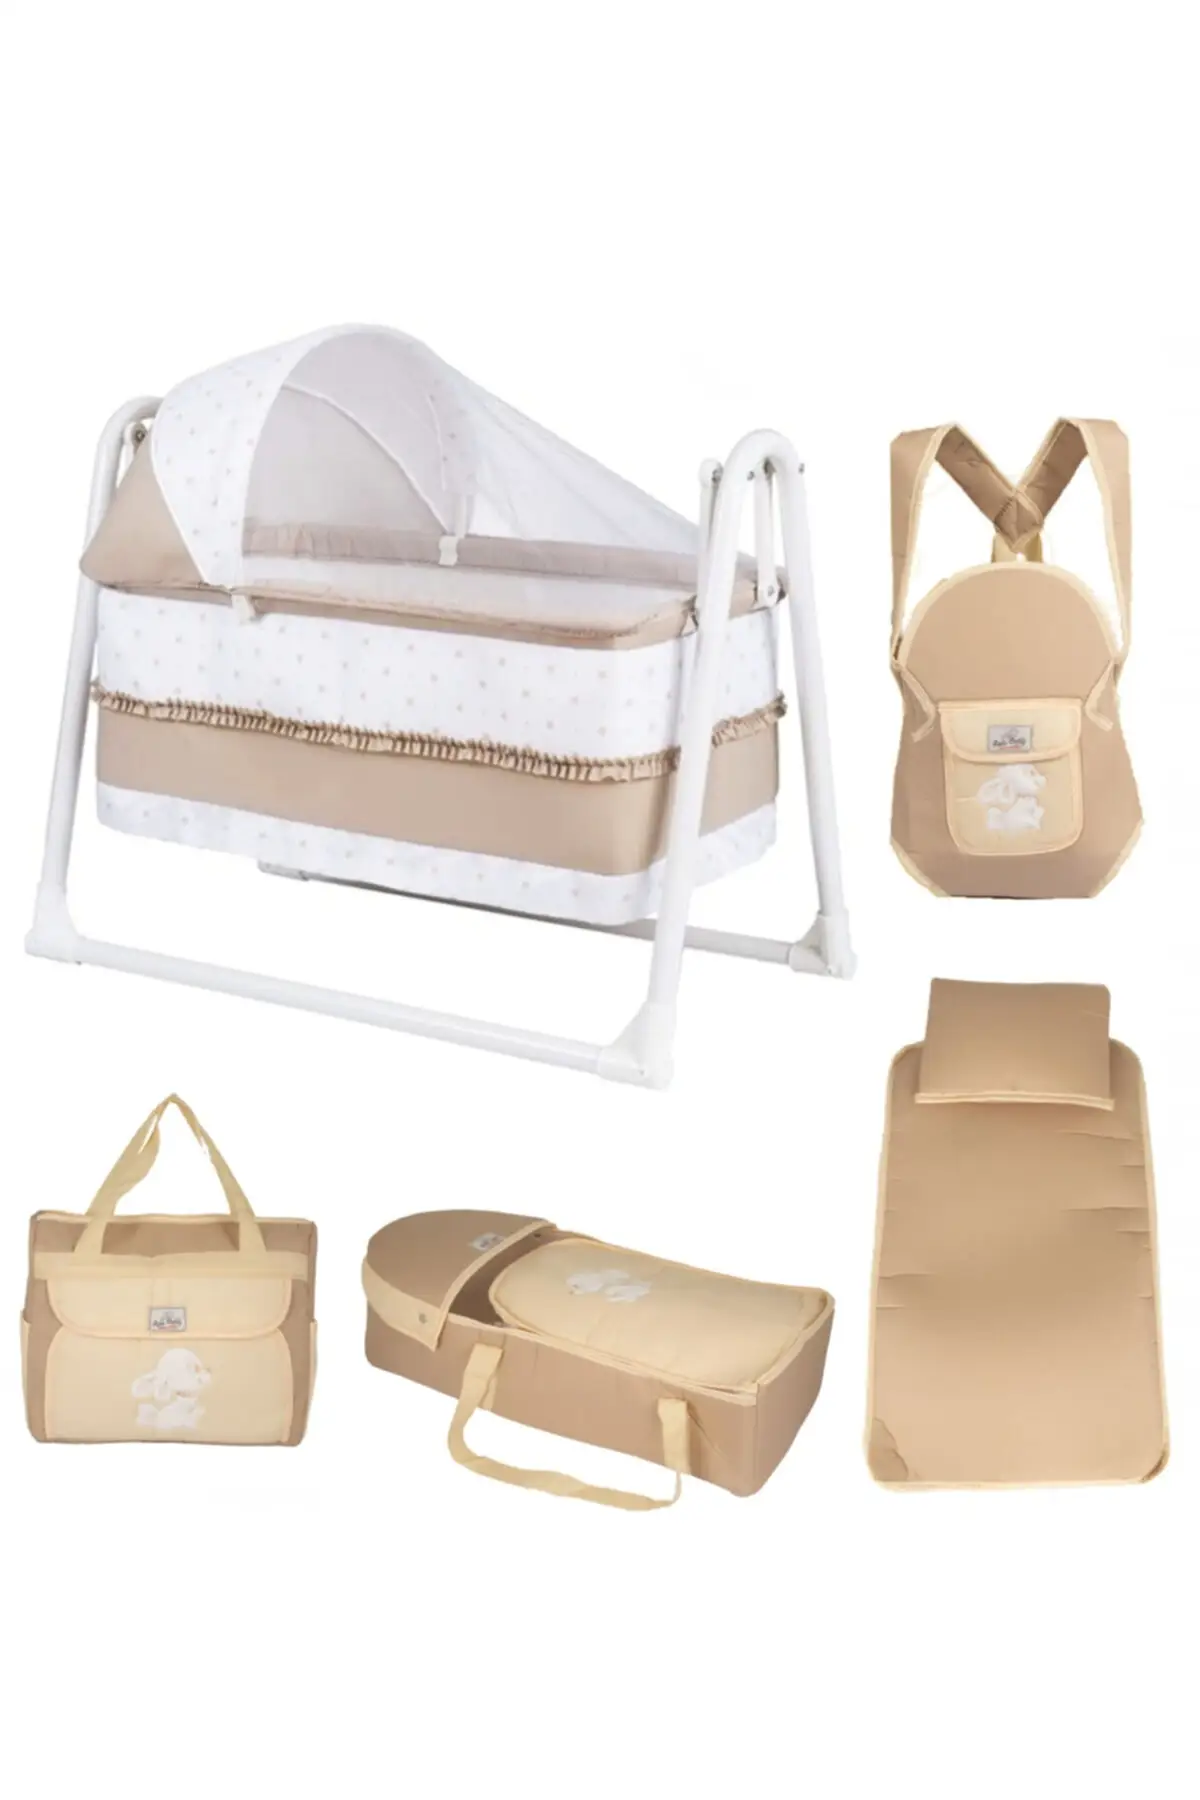 5 piece Baby Crib Set Basket Cradle Carrycot Care Bag Bottom Opening Kangaroo Set